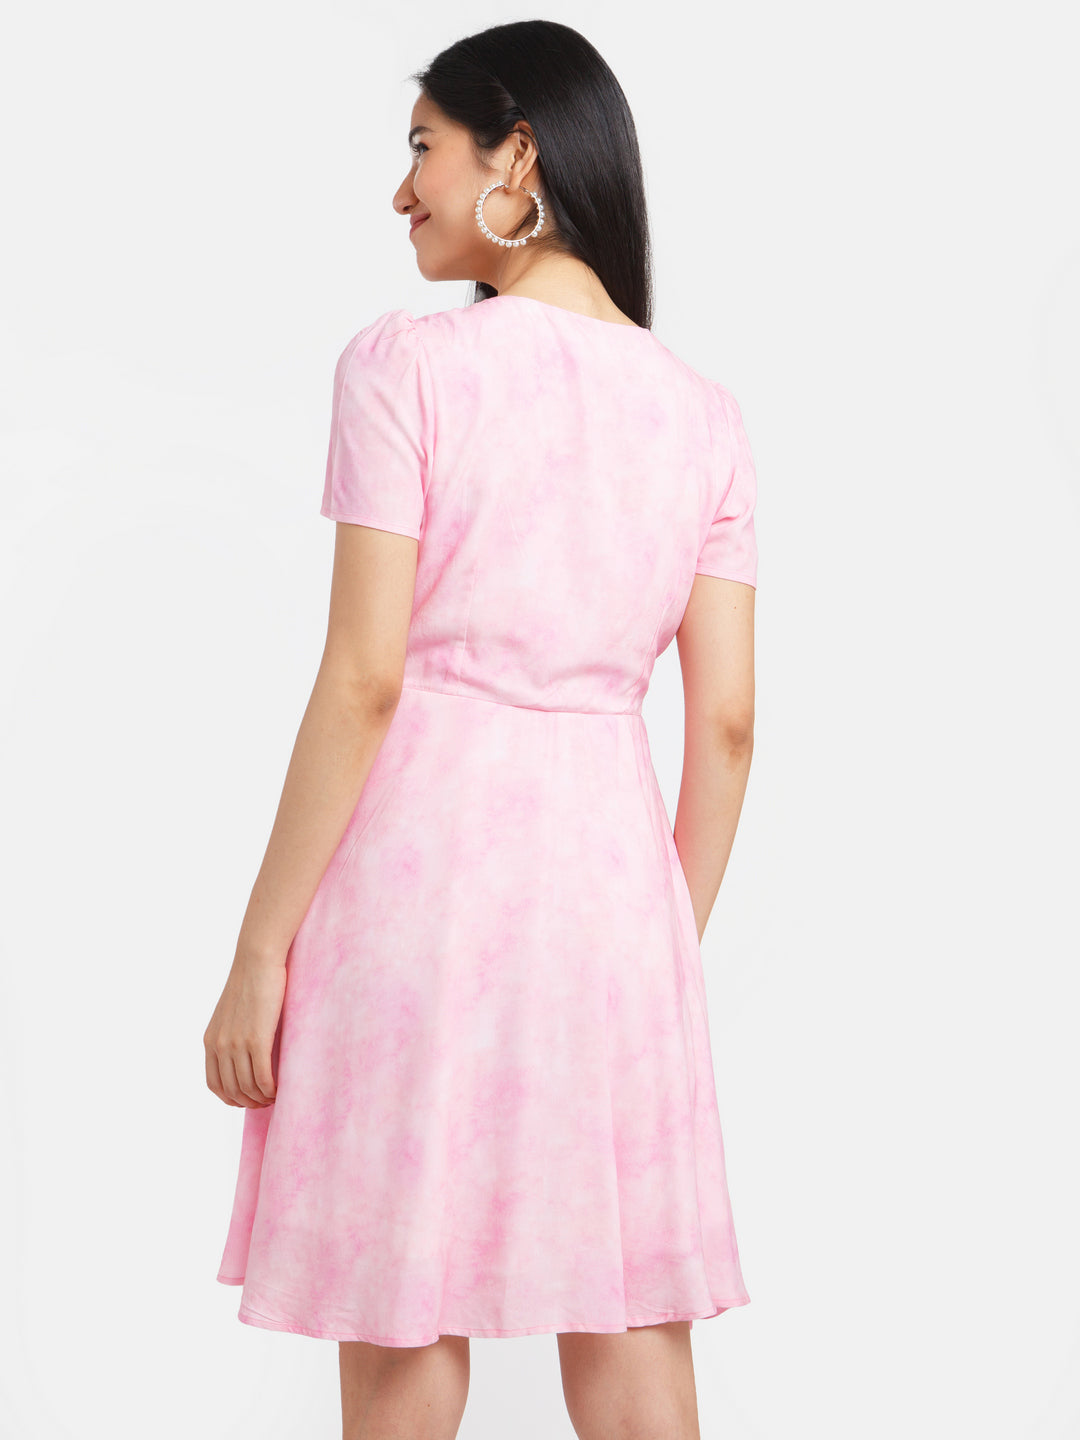 Pink Self Design Puff Sleeve Short Dress For Women